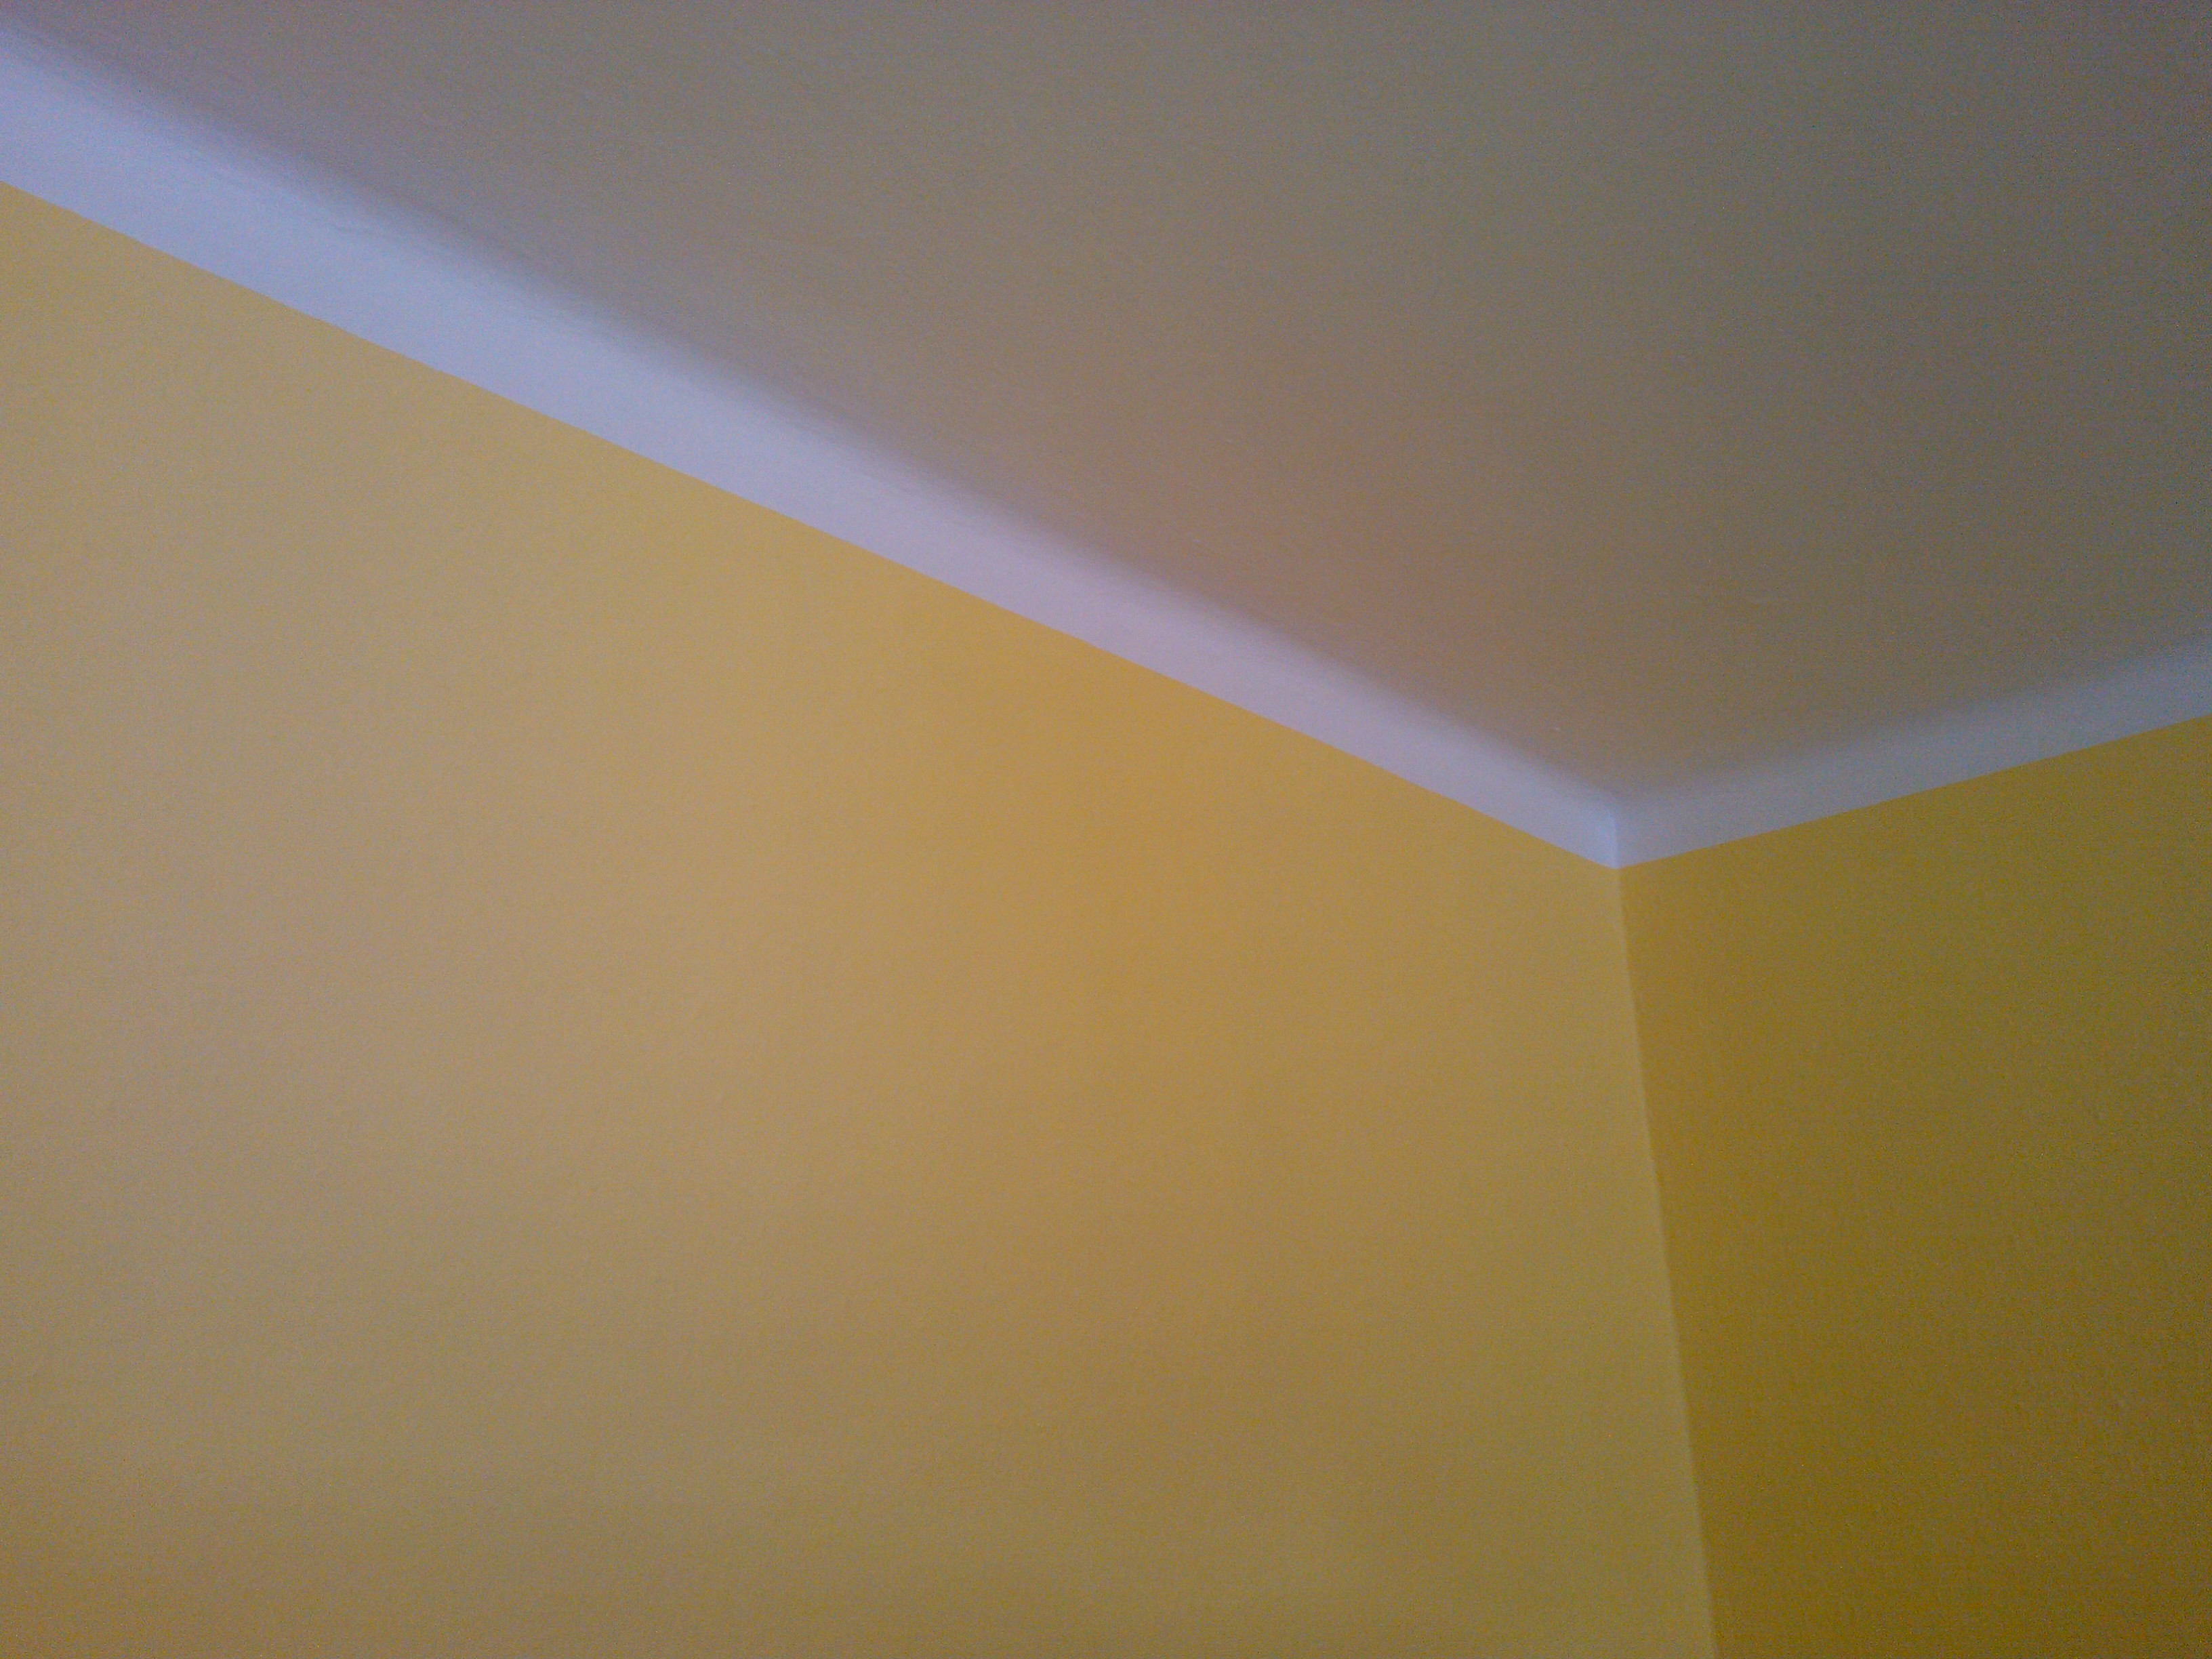 Malování pokoje sytě žlutou barvou